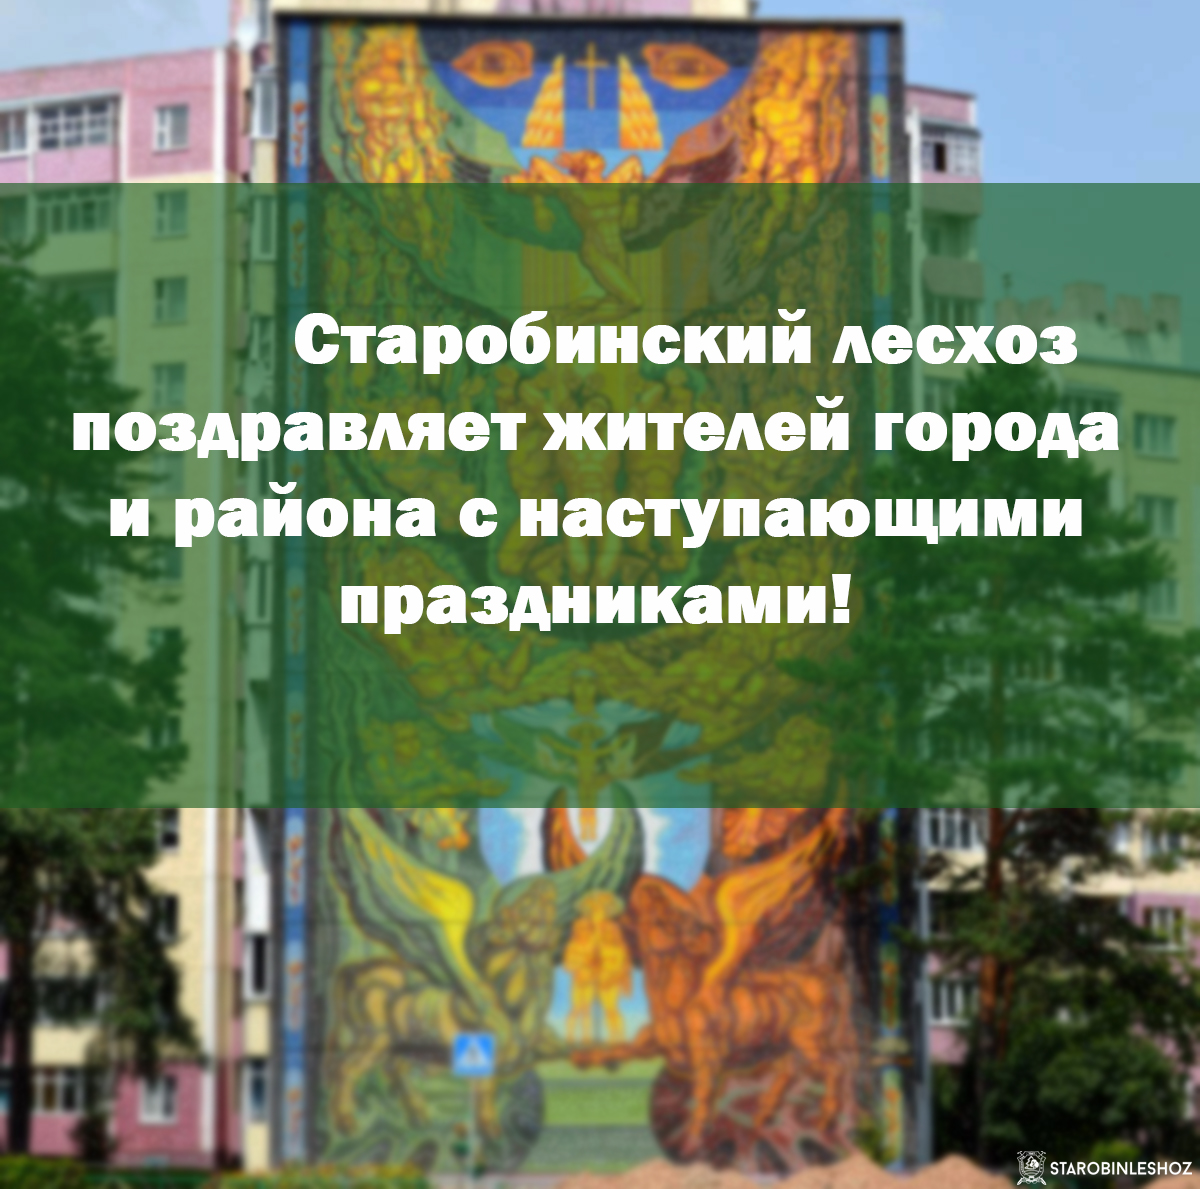 Старобинский лесхоз поздравляет жителей города и района с наступающим праздником!